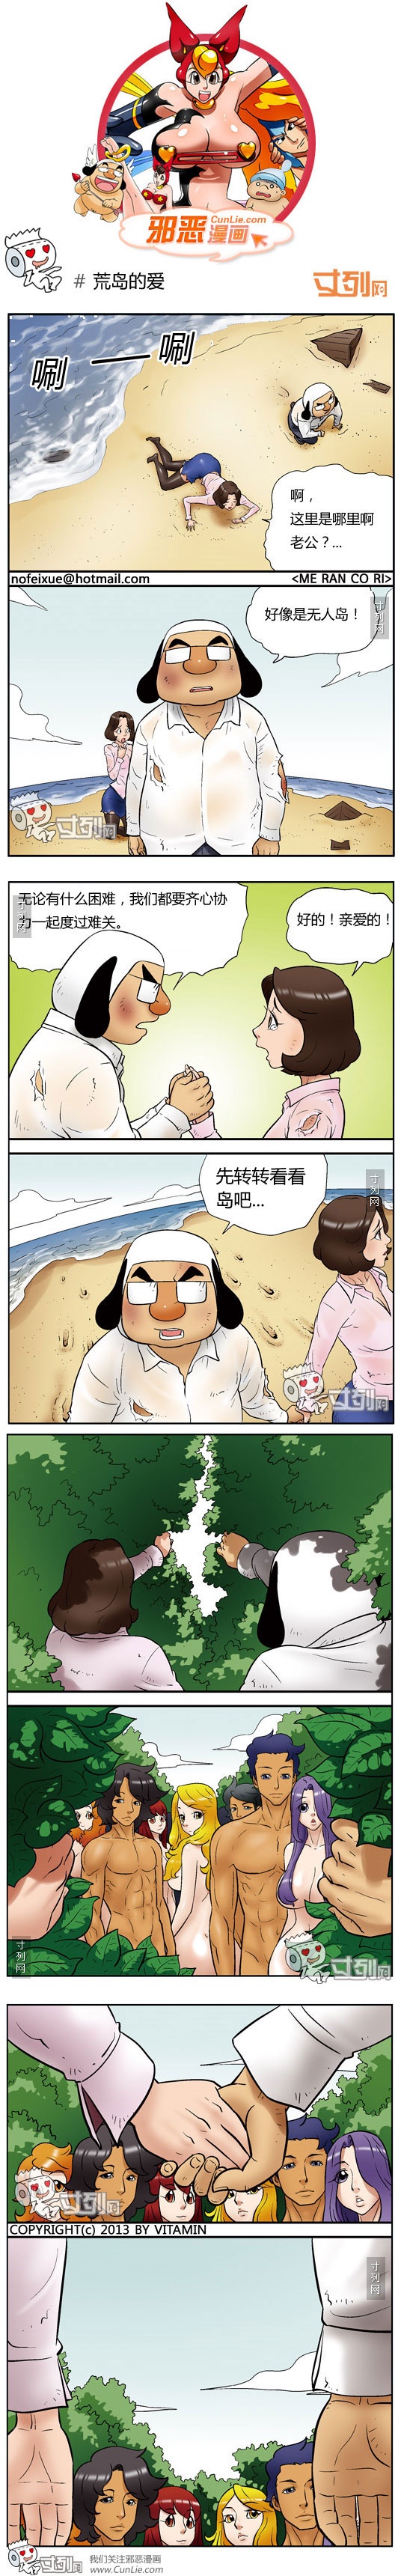 韩国成人漫画之荒岛的爱